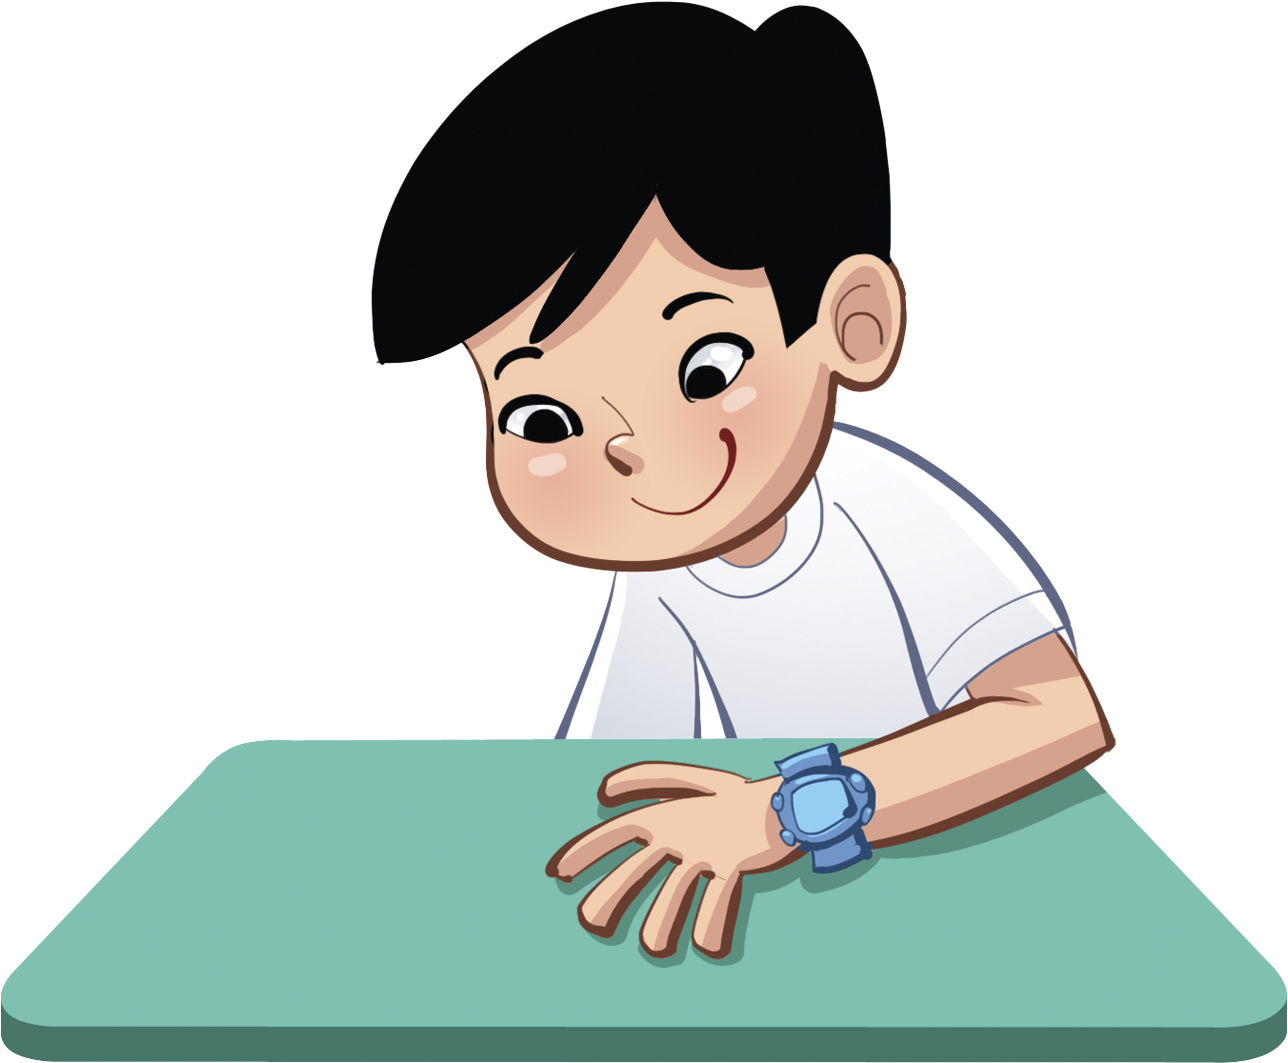 Ilustração.
Menino de cabelos pretos e camisa branca, com a mão e antebraço apoiados sobre a superfície verde de uma mesa.